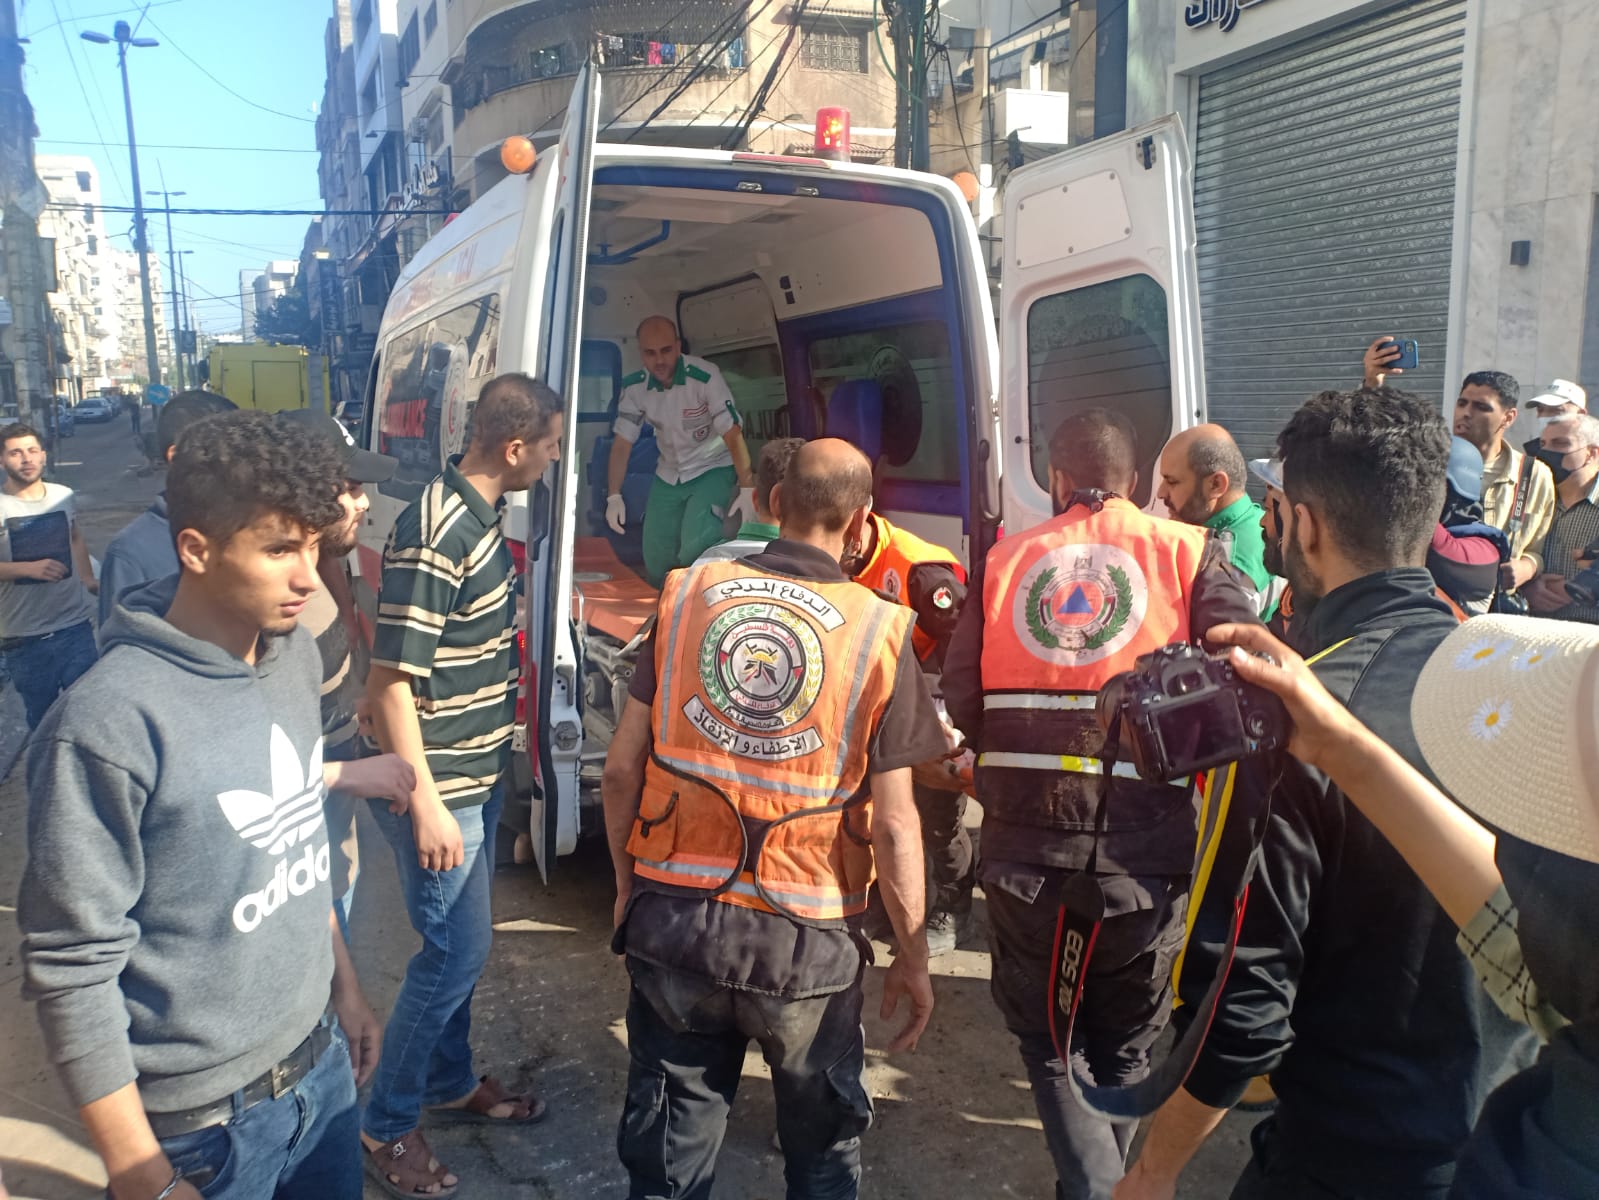 نقل مصاب في مركبة إسعاف، بعد أن أنقذته كوادر الدفاع المدني من تحت أنقاض منزل استهدفه قصف الاحتلال الإسرائيلي على غزة. 16/05/2021. (رافي الملح/ وفا)